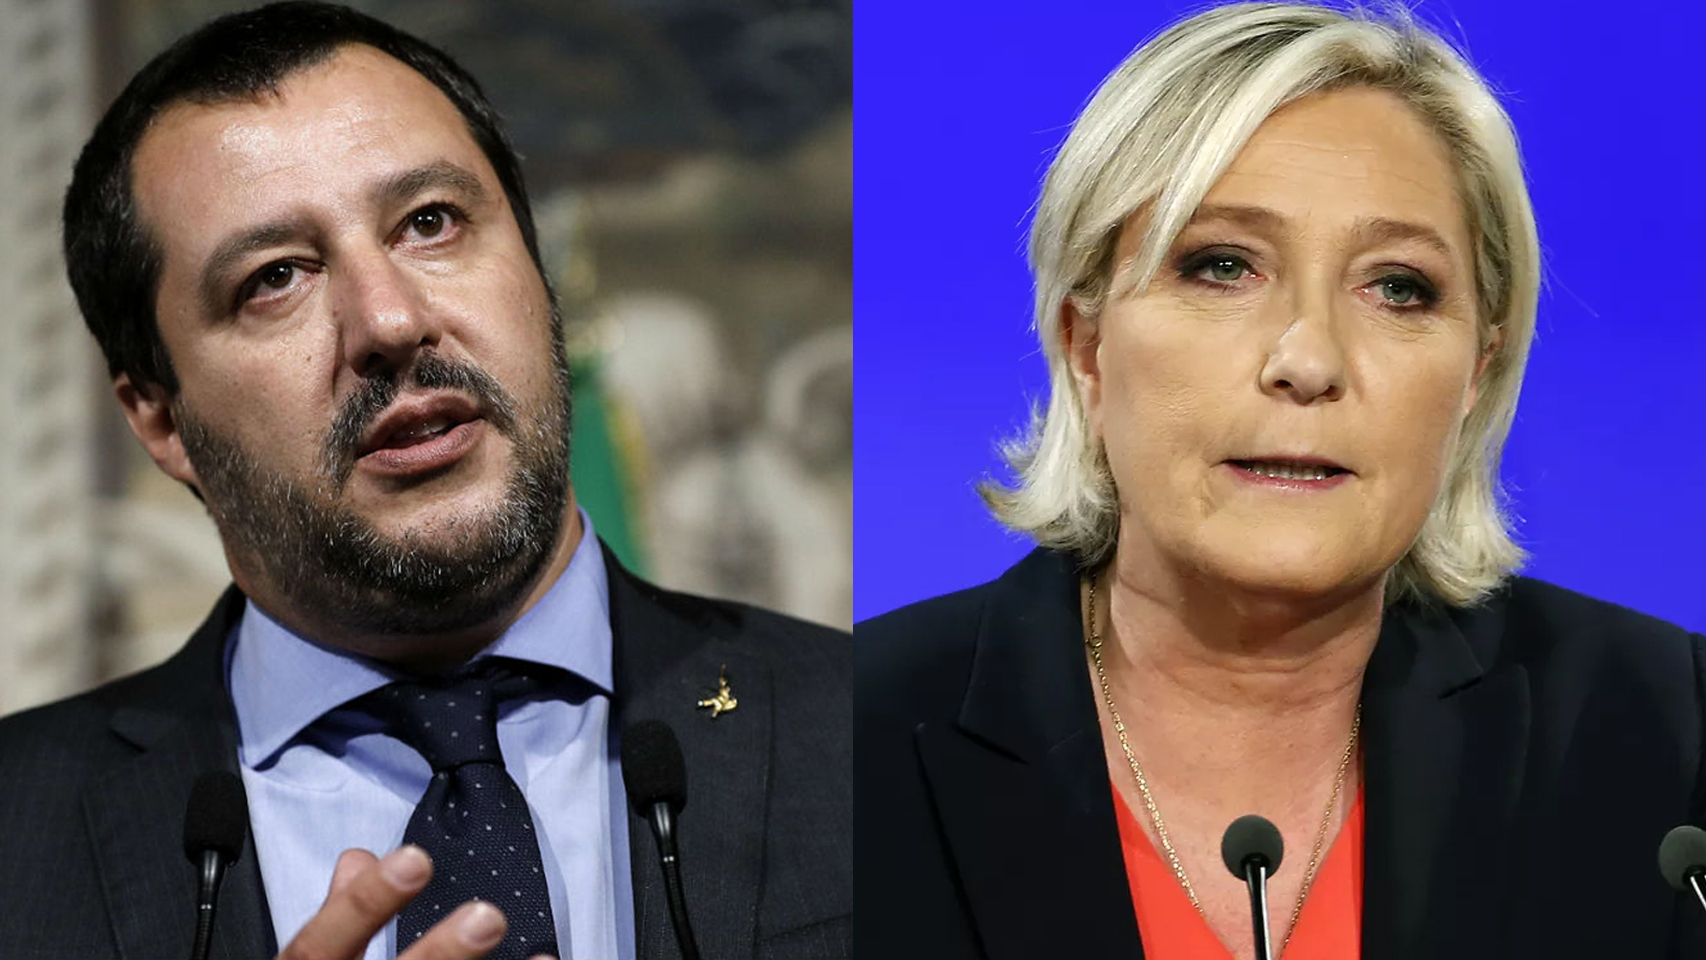 La ultraderecha crecerá en la Eurocámara gracias al empuje de Salvini y Le Pen